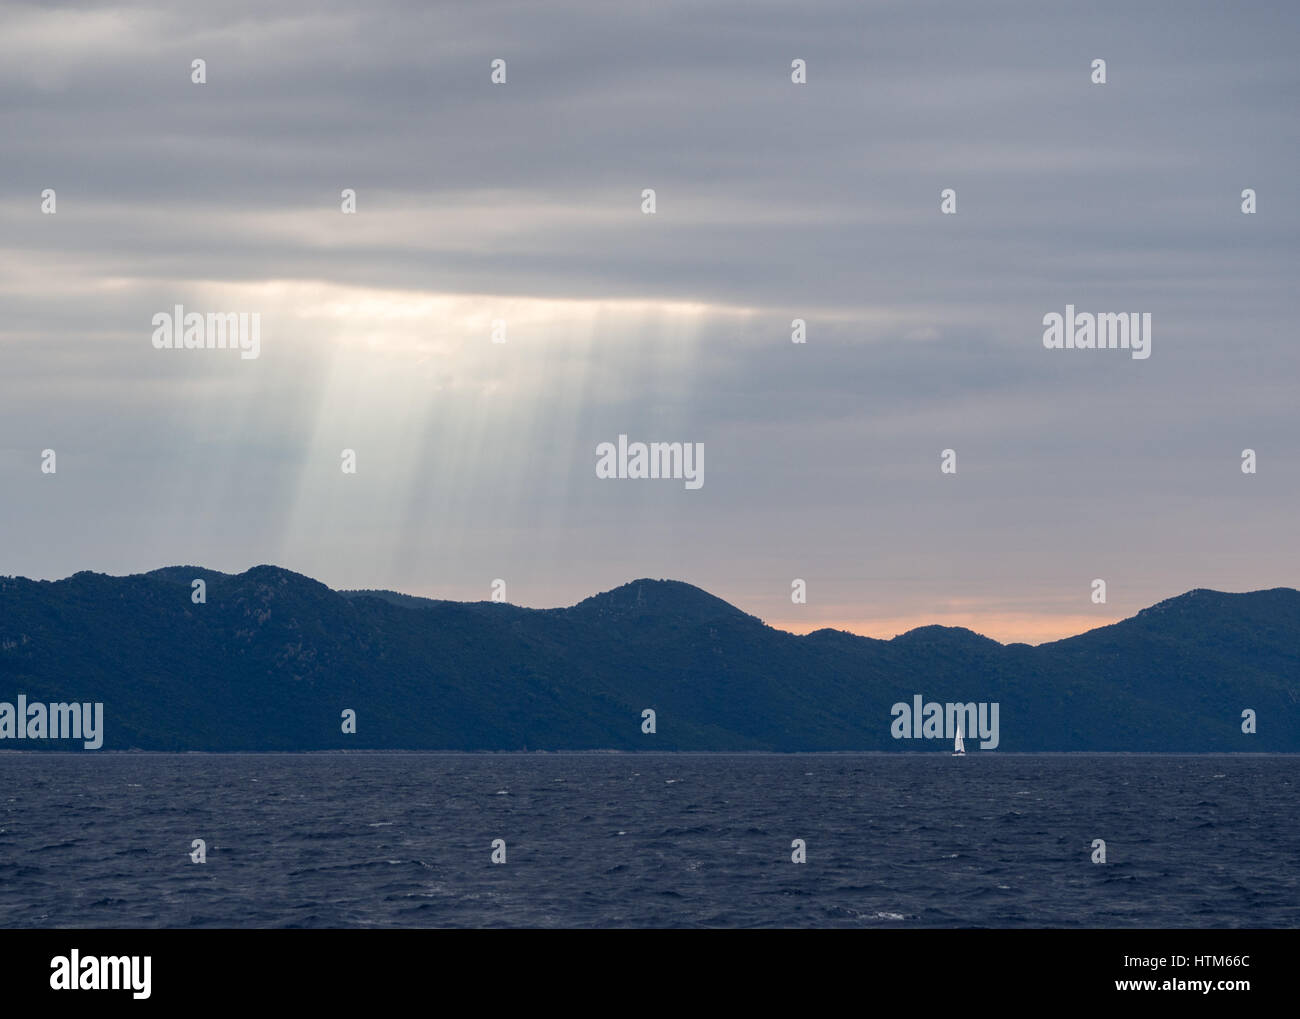 Sonnenstrahlen durch stürmische dunkle Wolken über eine Silhouette von Hügeln und Bergen Berg bei Sonnenuntergang mit Yacht am Meer Ozean, Kroatien Stockfoto